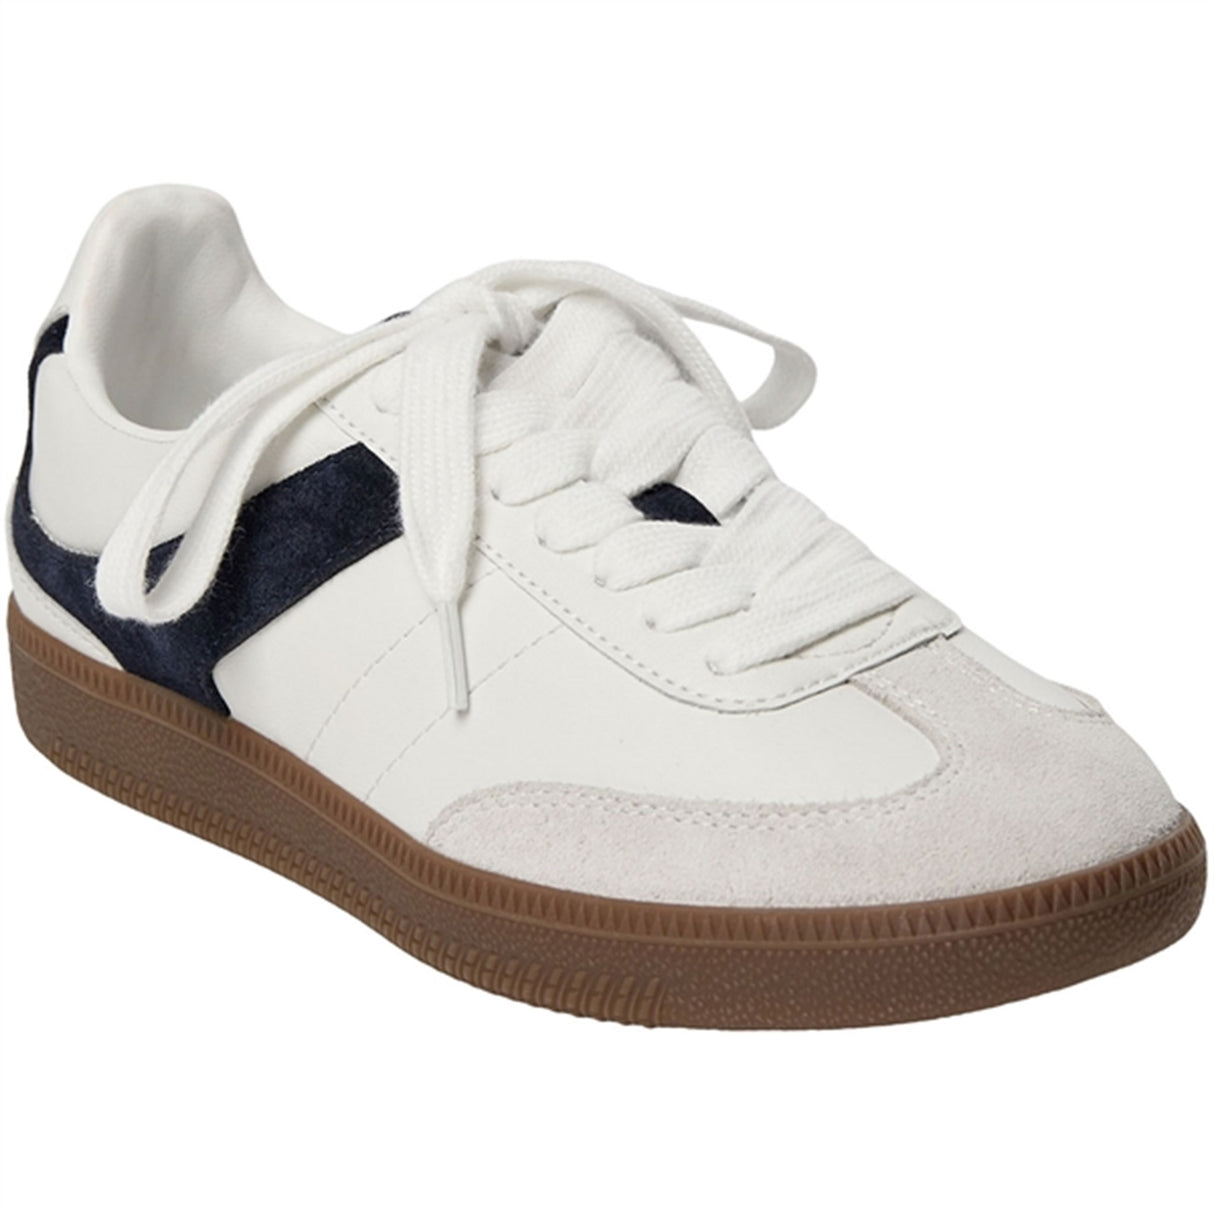 Sofie Schnoor Navy Blue Sneakers 2